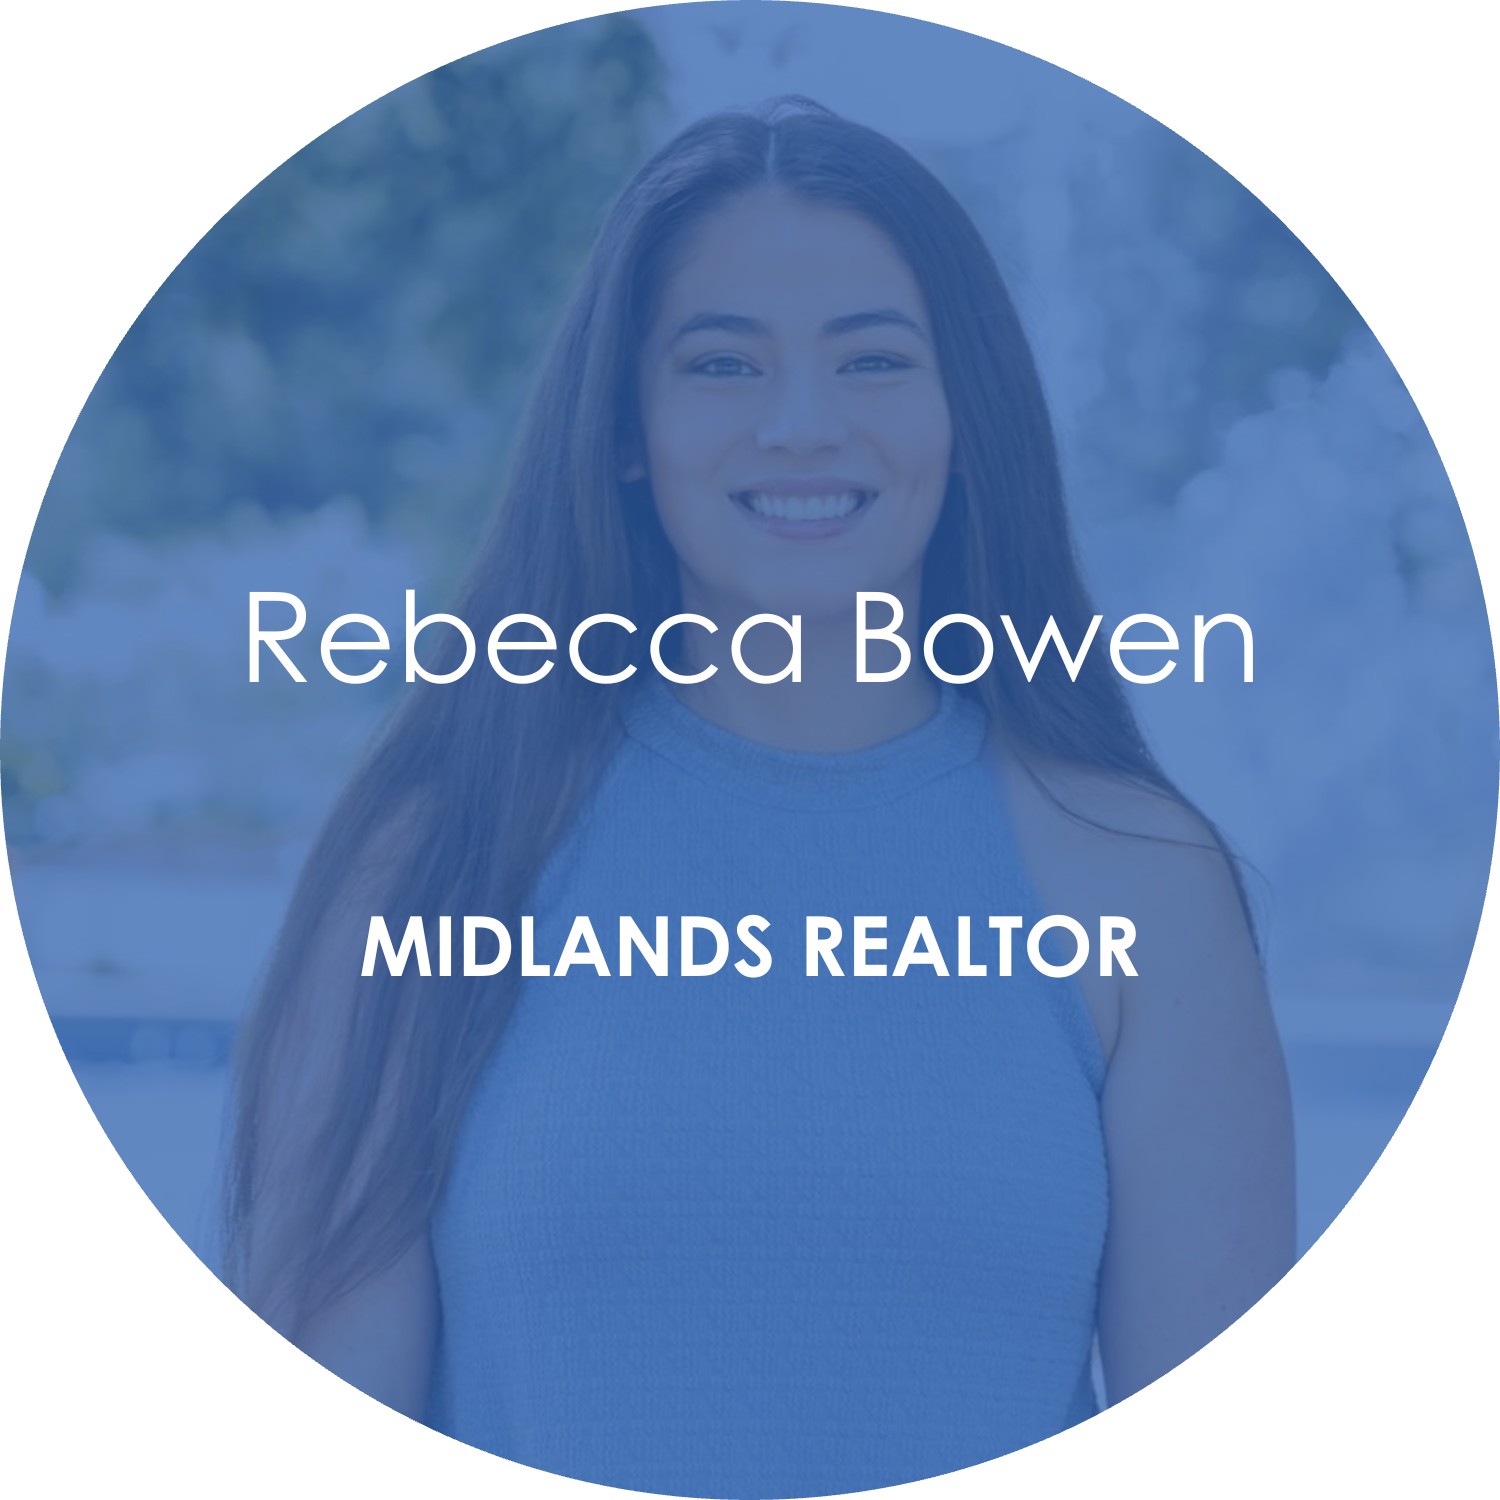 Rebecca Bowen – Midlands Realtor